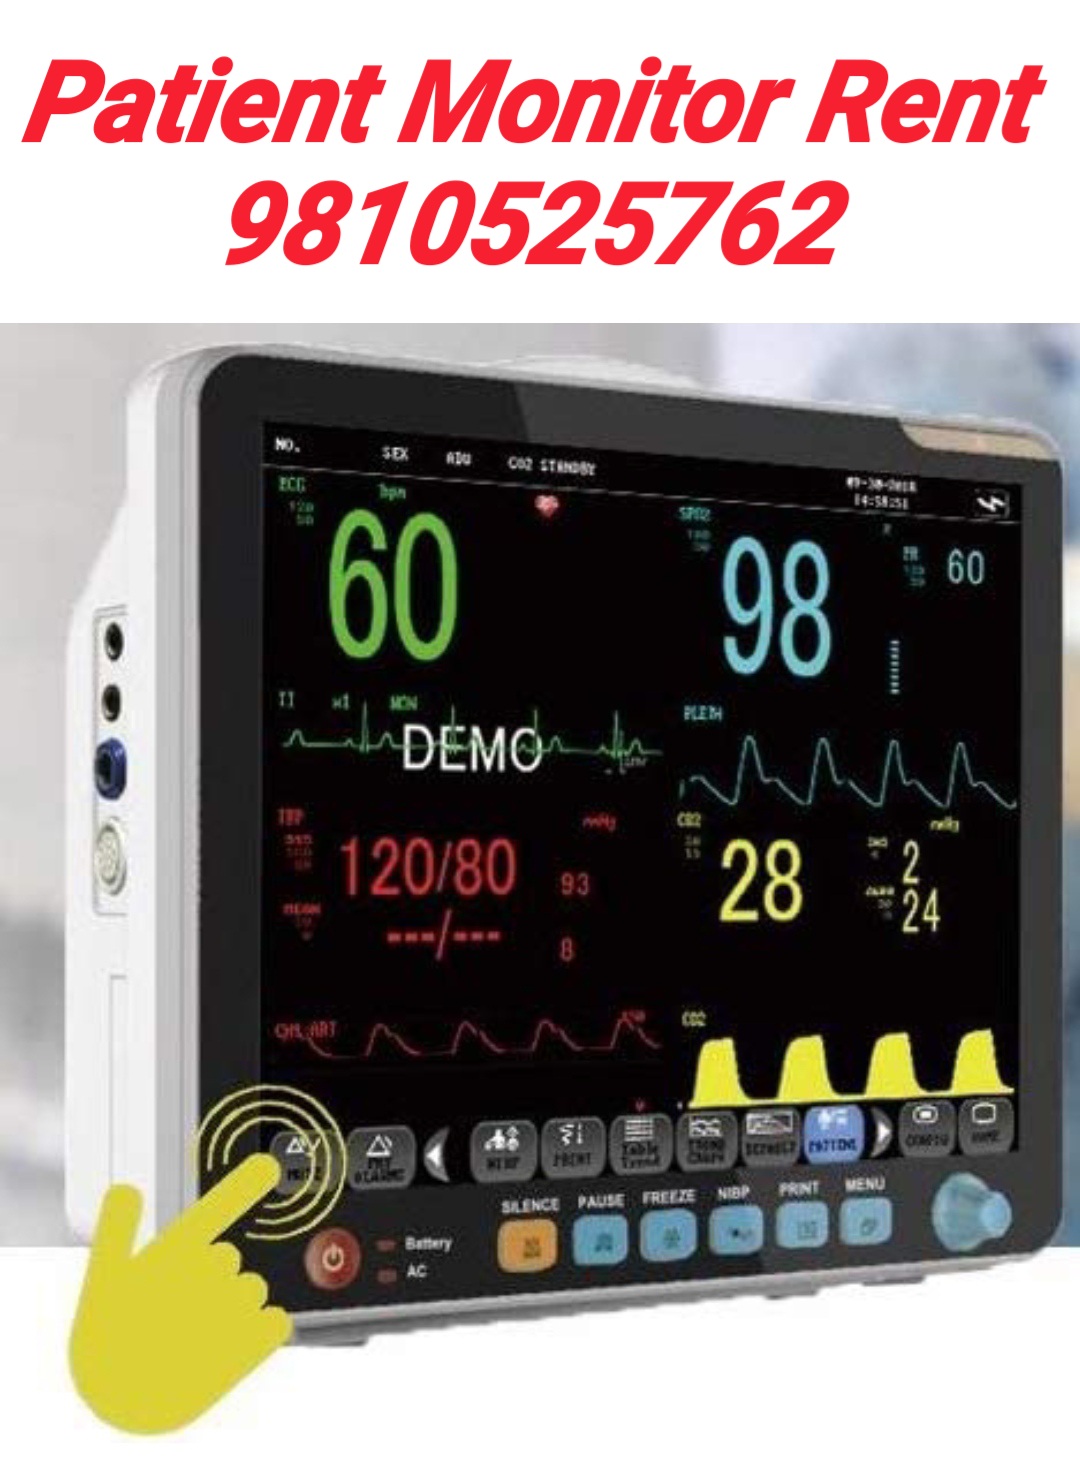 Patient Monitor Rent East Delhi 9810525762